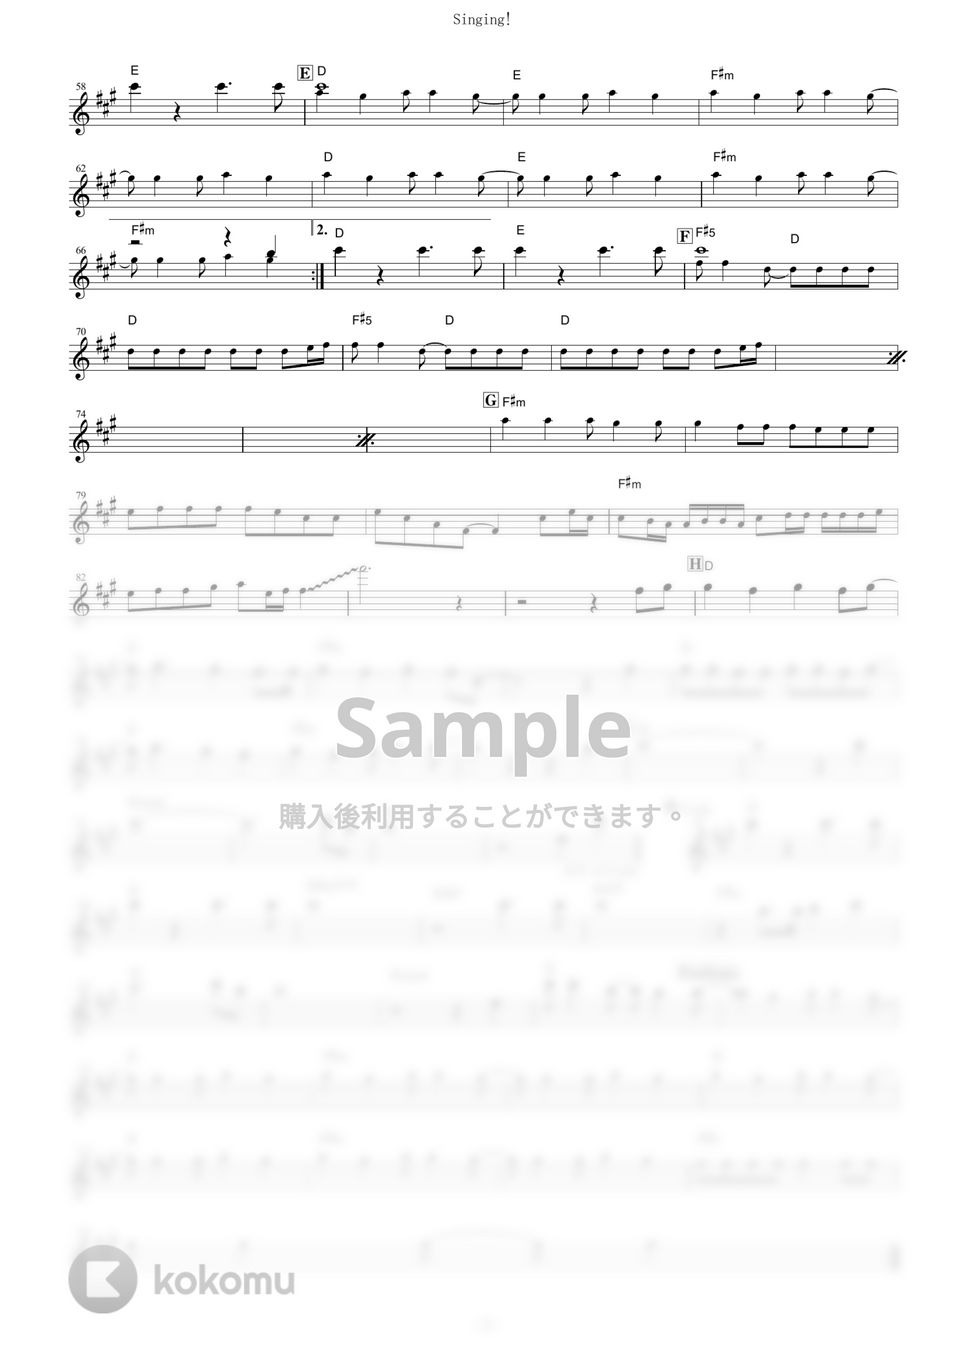 放課後ティータイム - Singing! (『映画けいおん！』 / in Bb) by muta-sax